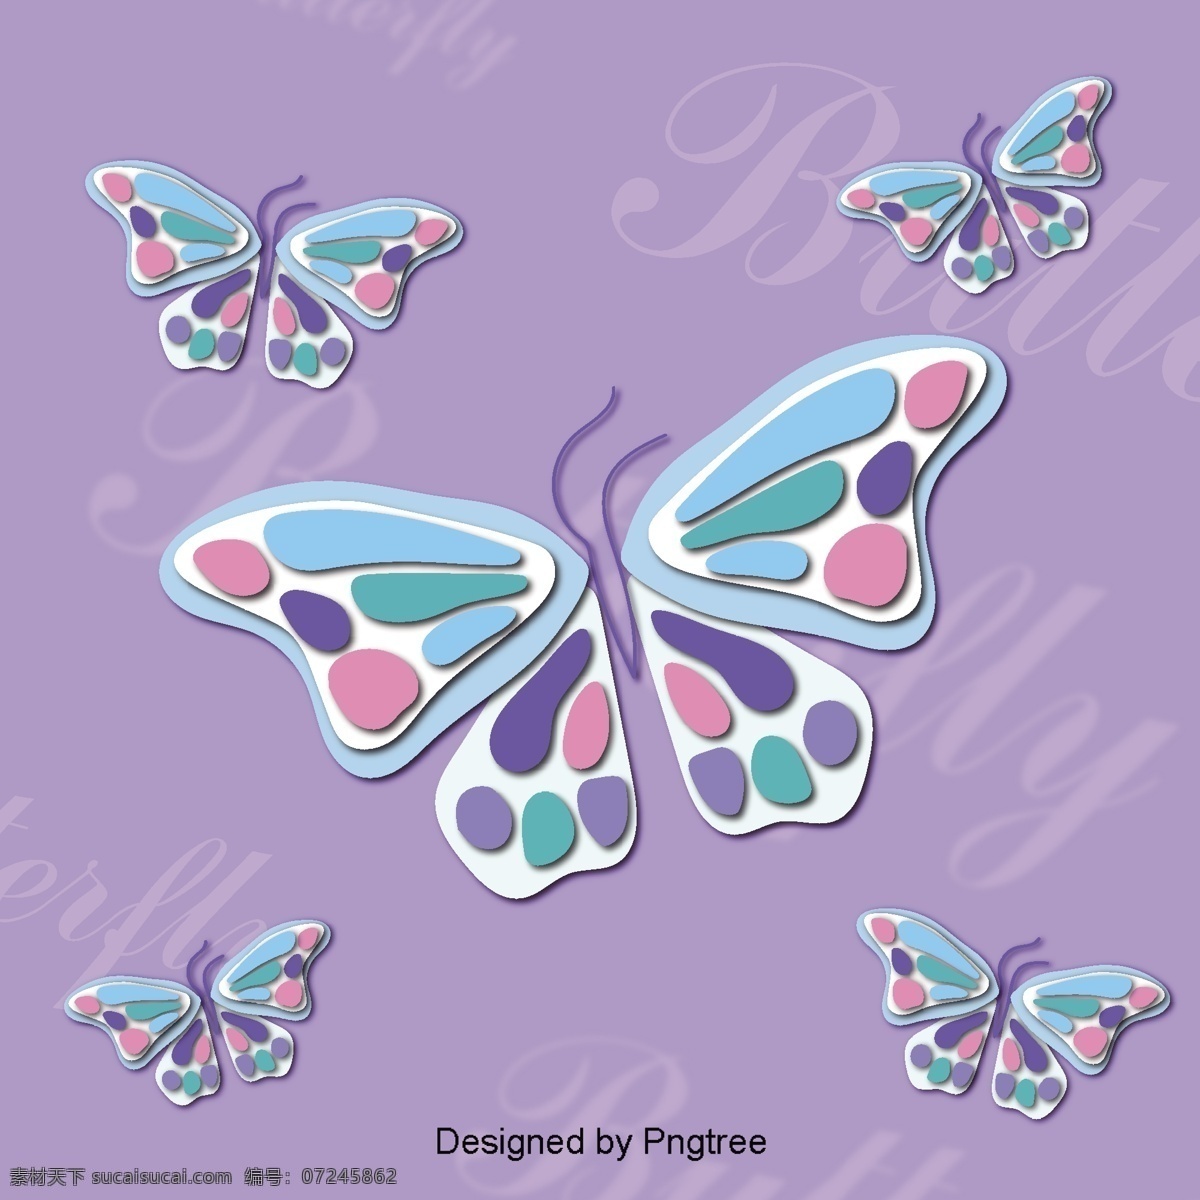 美丽 的卡 通 可爱 手绘 彩色 蝴蝶 翅膀 漂亮 卡通 平面 颜色 幻想 装饰 飞行